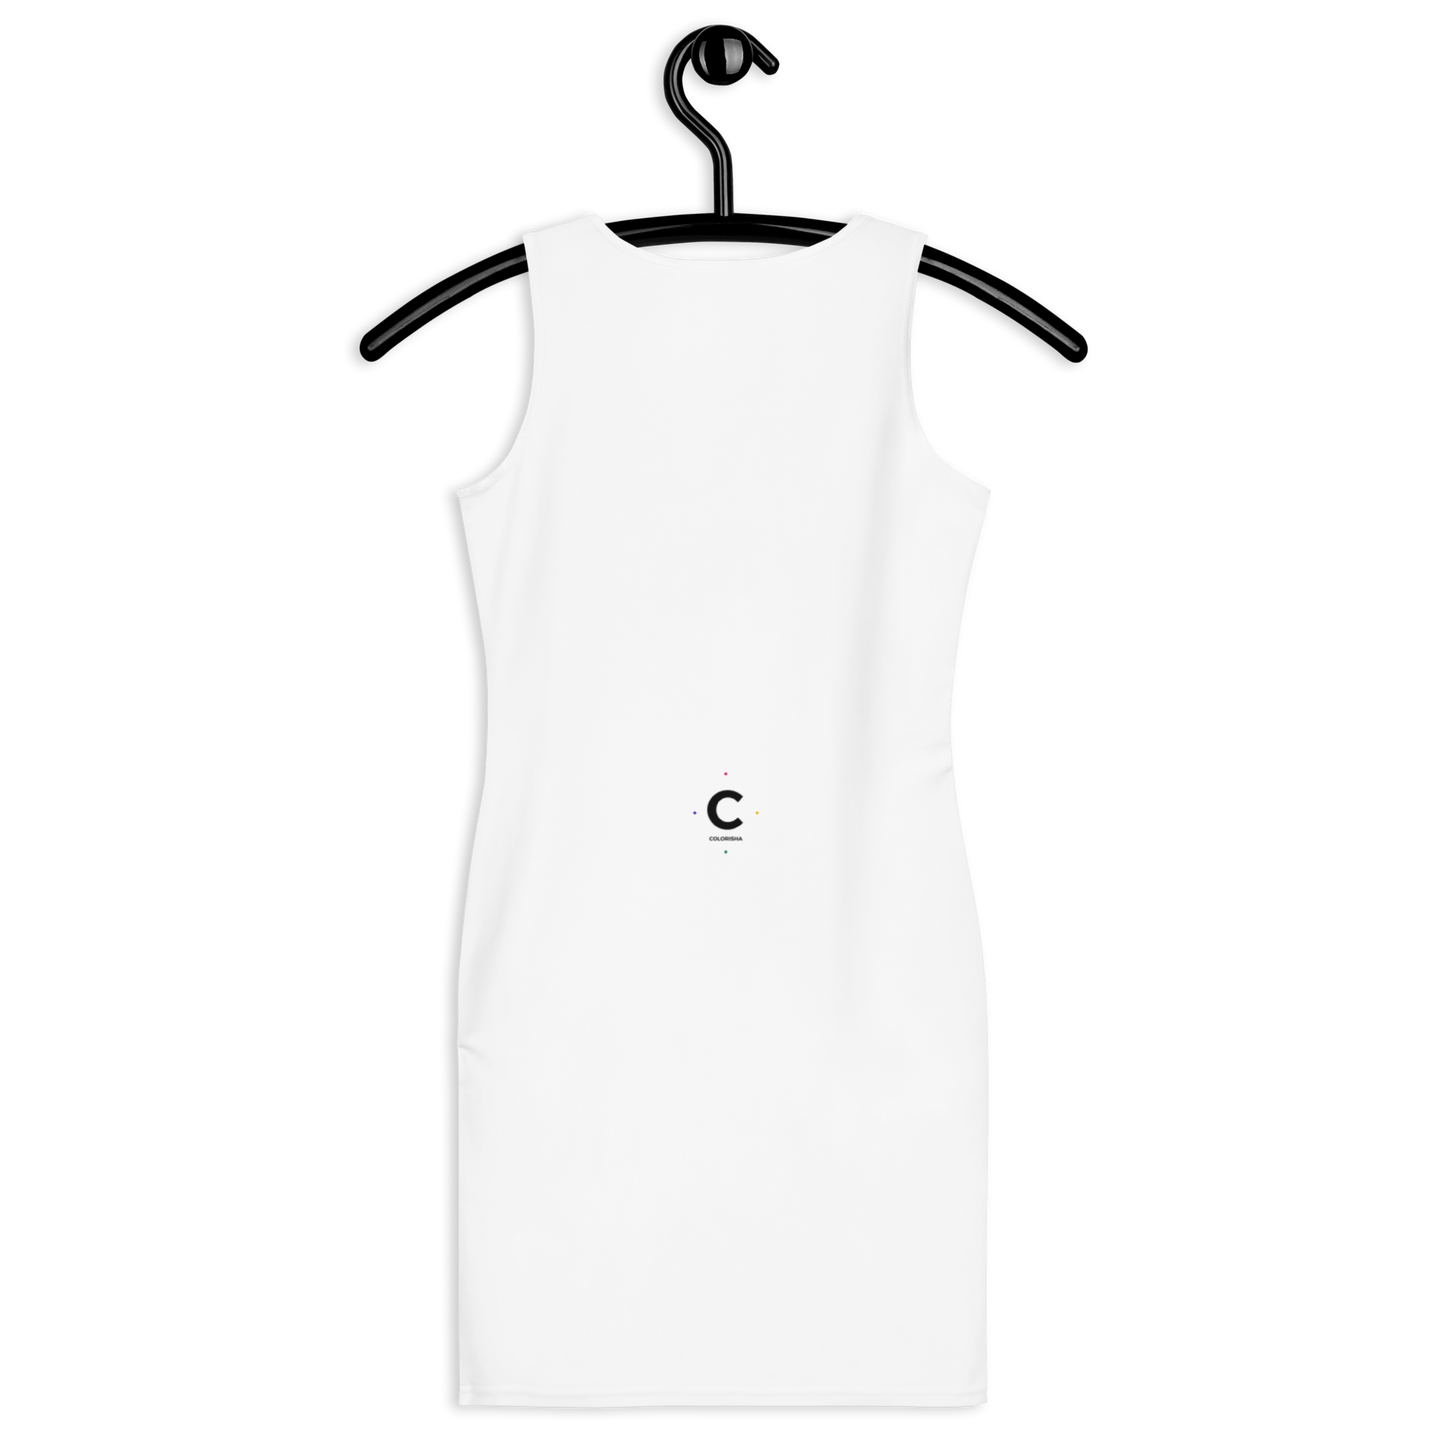 Ochun - Dress - Model n°5